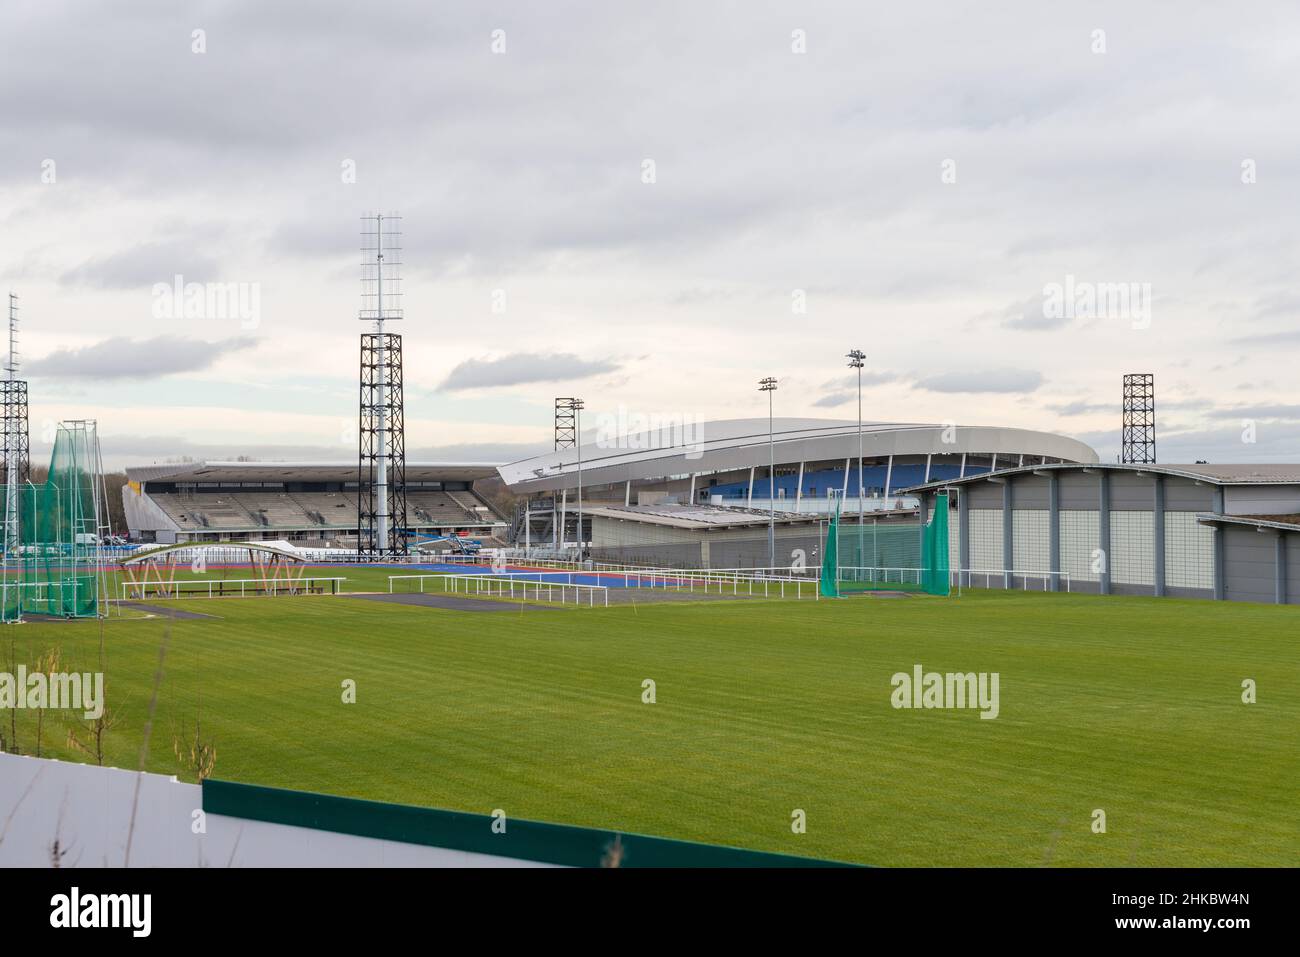 Costruzione dell'Alexander Stadium a Perry Barr, Birmingham per gli eventi sul campo e i 2022 piste dei Birmingham Commonwealth Games Foto Stock